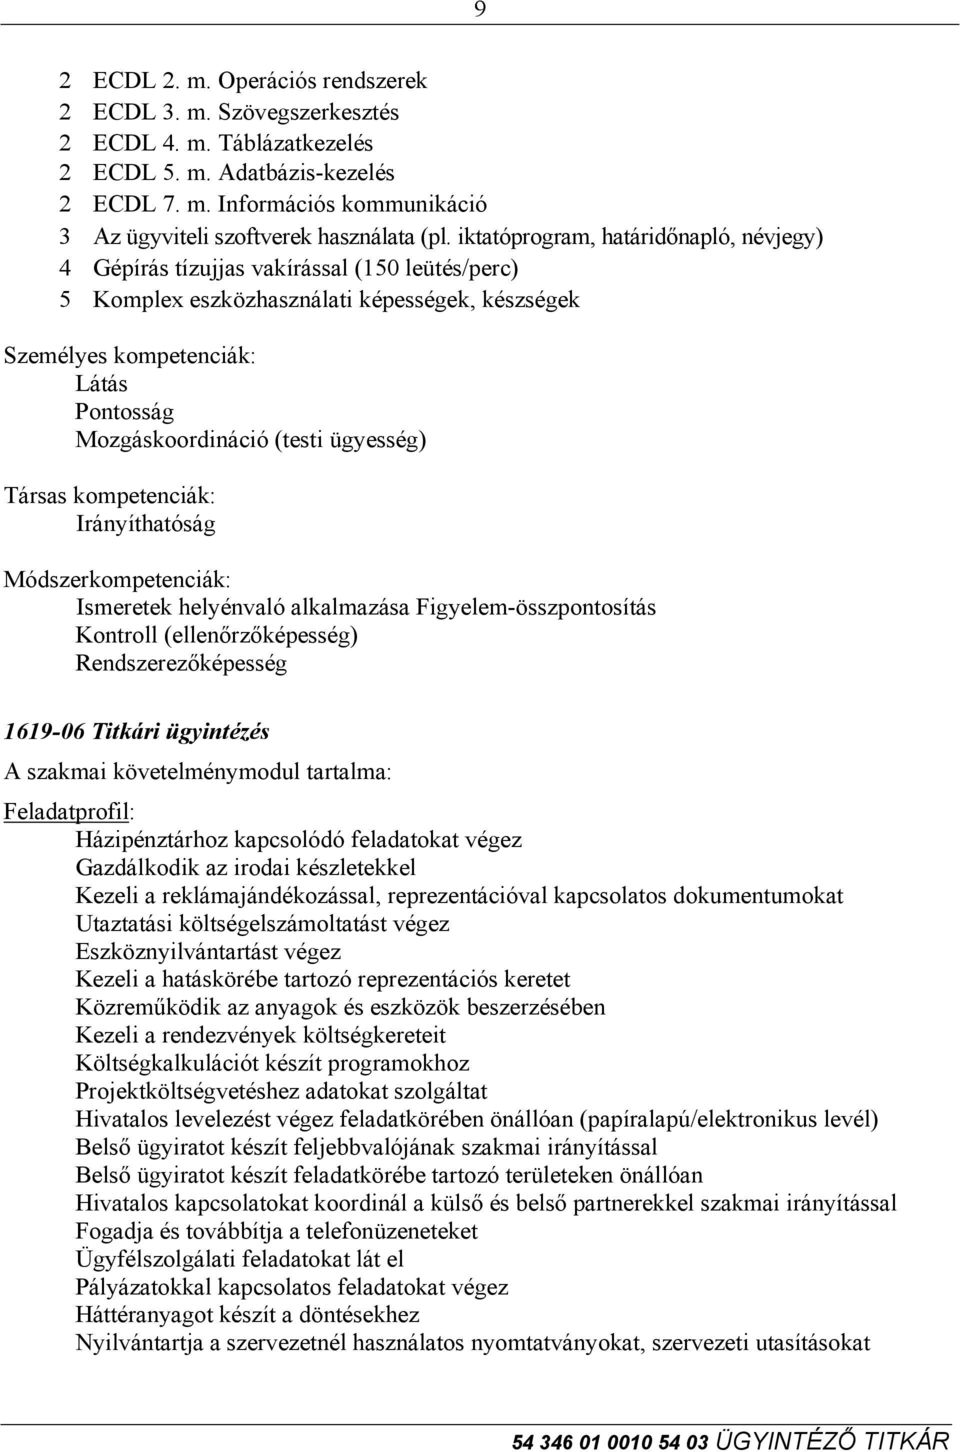 ügyesség) Társas kompetenciák: Irányíthatóság Módszerkompetenciák: Ismeretek helyénvaló alkalmazása Figyelem-összpontosítás Kontroll (ellenőrzőképesség) Rendszerezőképesség 1619-06 Titkári ügyintézés